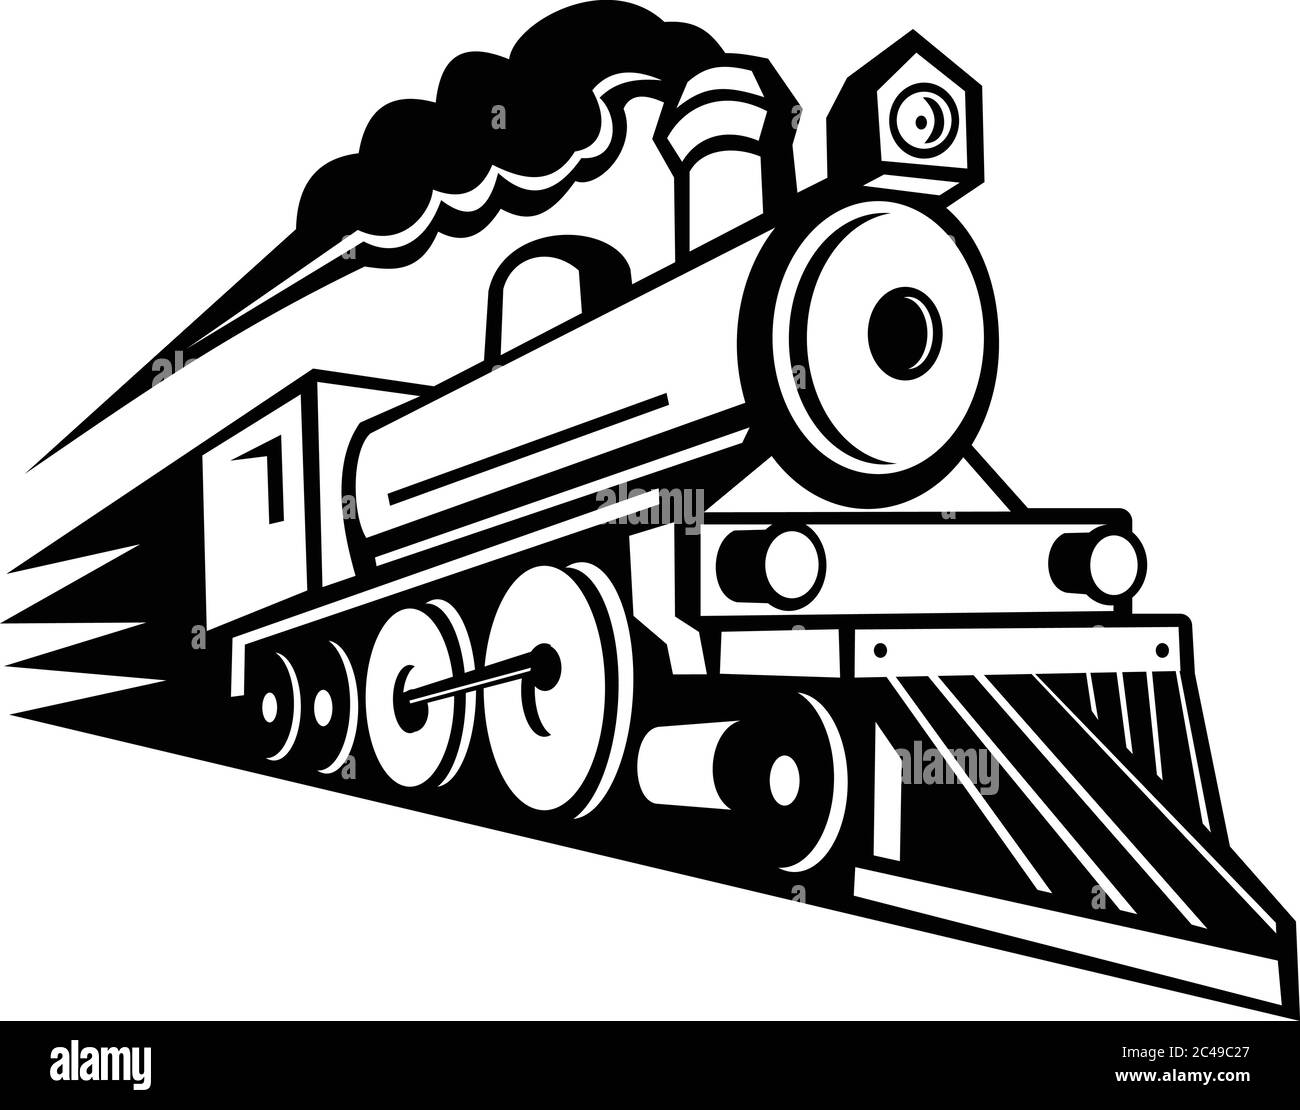 Schwarz-weiße Abbildung einer alten Dampflokomotive oder eines Zuges, der in voller Geschwindigkeit beschleunigt, der Betrachter vorwärts auf isoliertem Hintergrund in retr kommt Stock Vektor